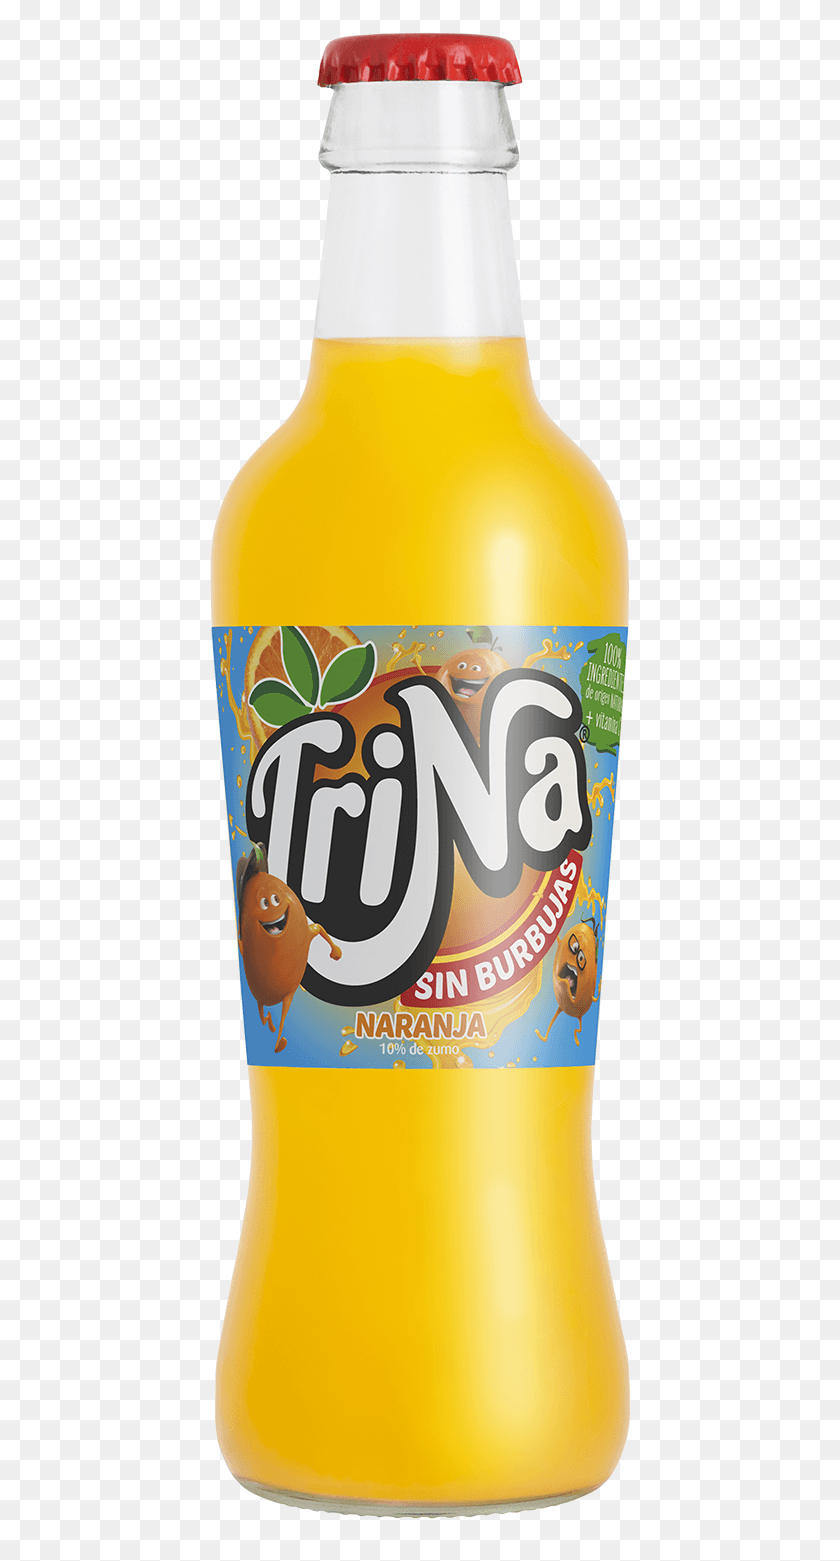 422x1501 Trina Vidrio Naranja 275 Cl Orange Soft Drink, Bottle, Beverage, Beer HD PNG Download